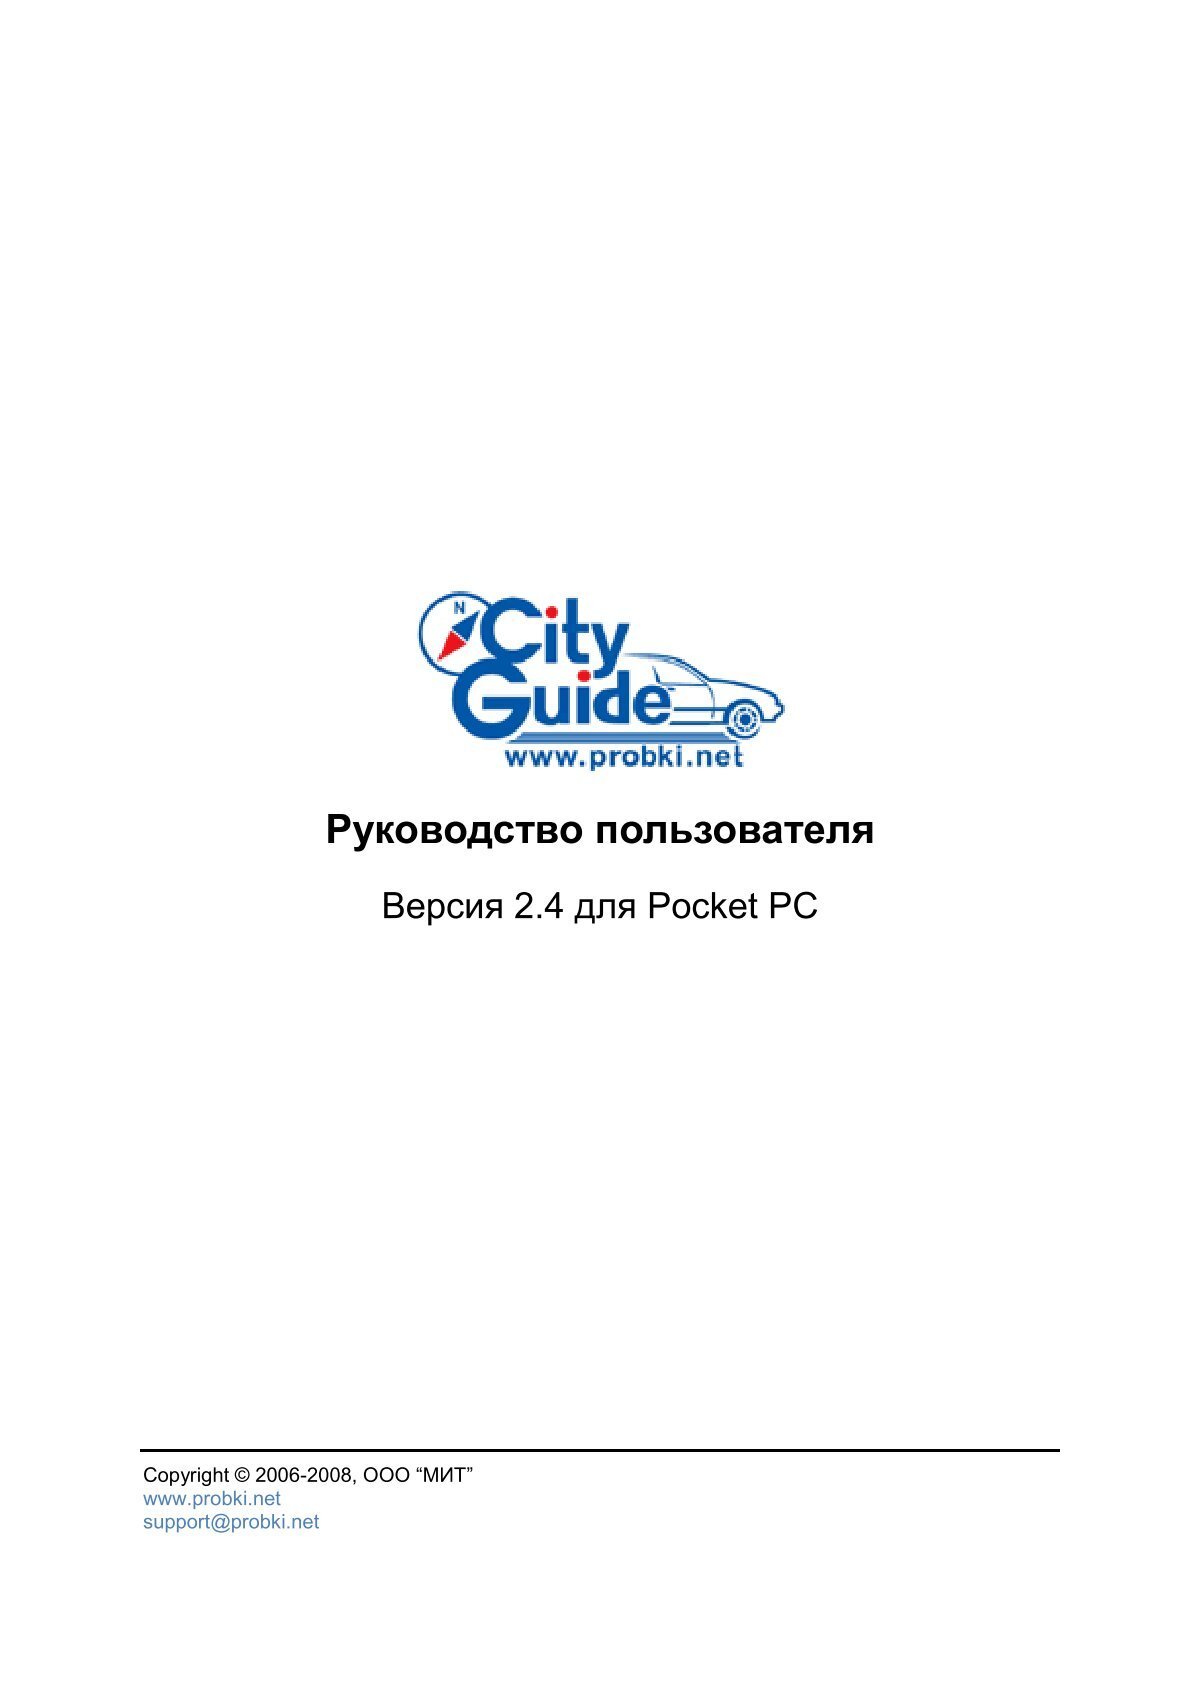 CityGuide V2.4 User Manual.Pdf - Инструкции